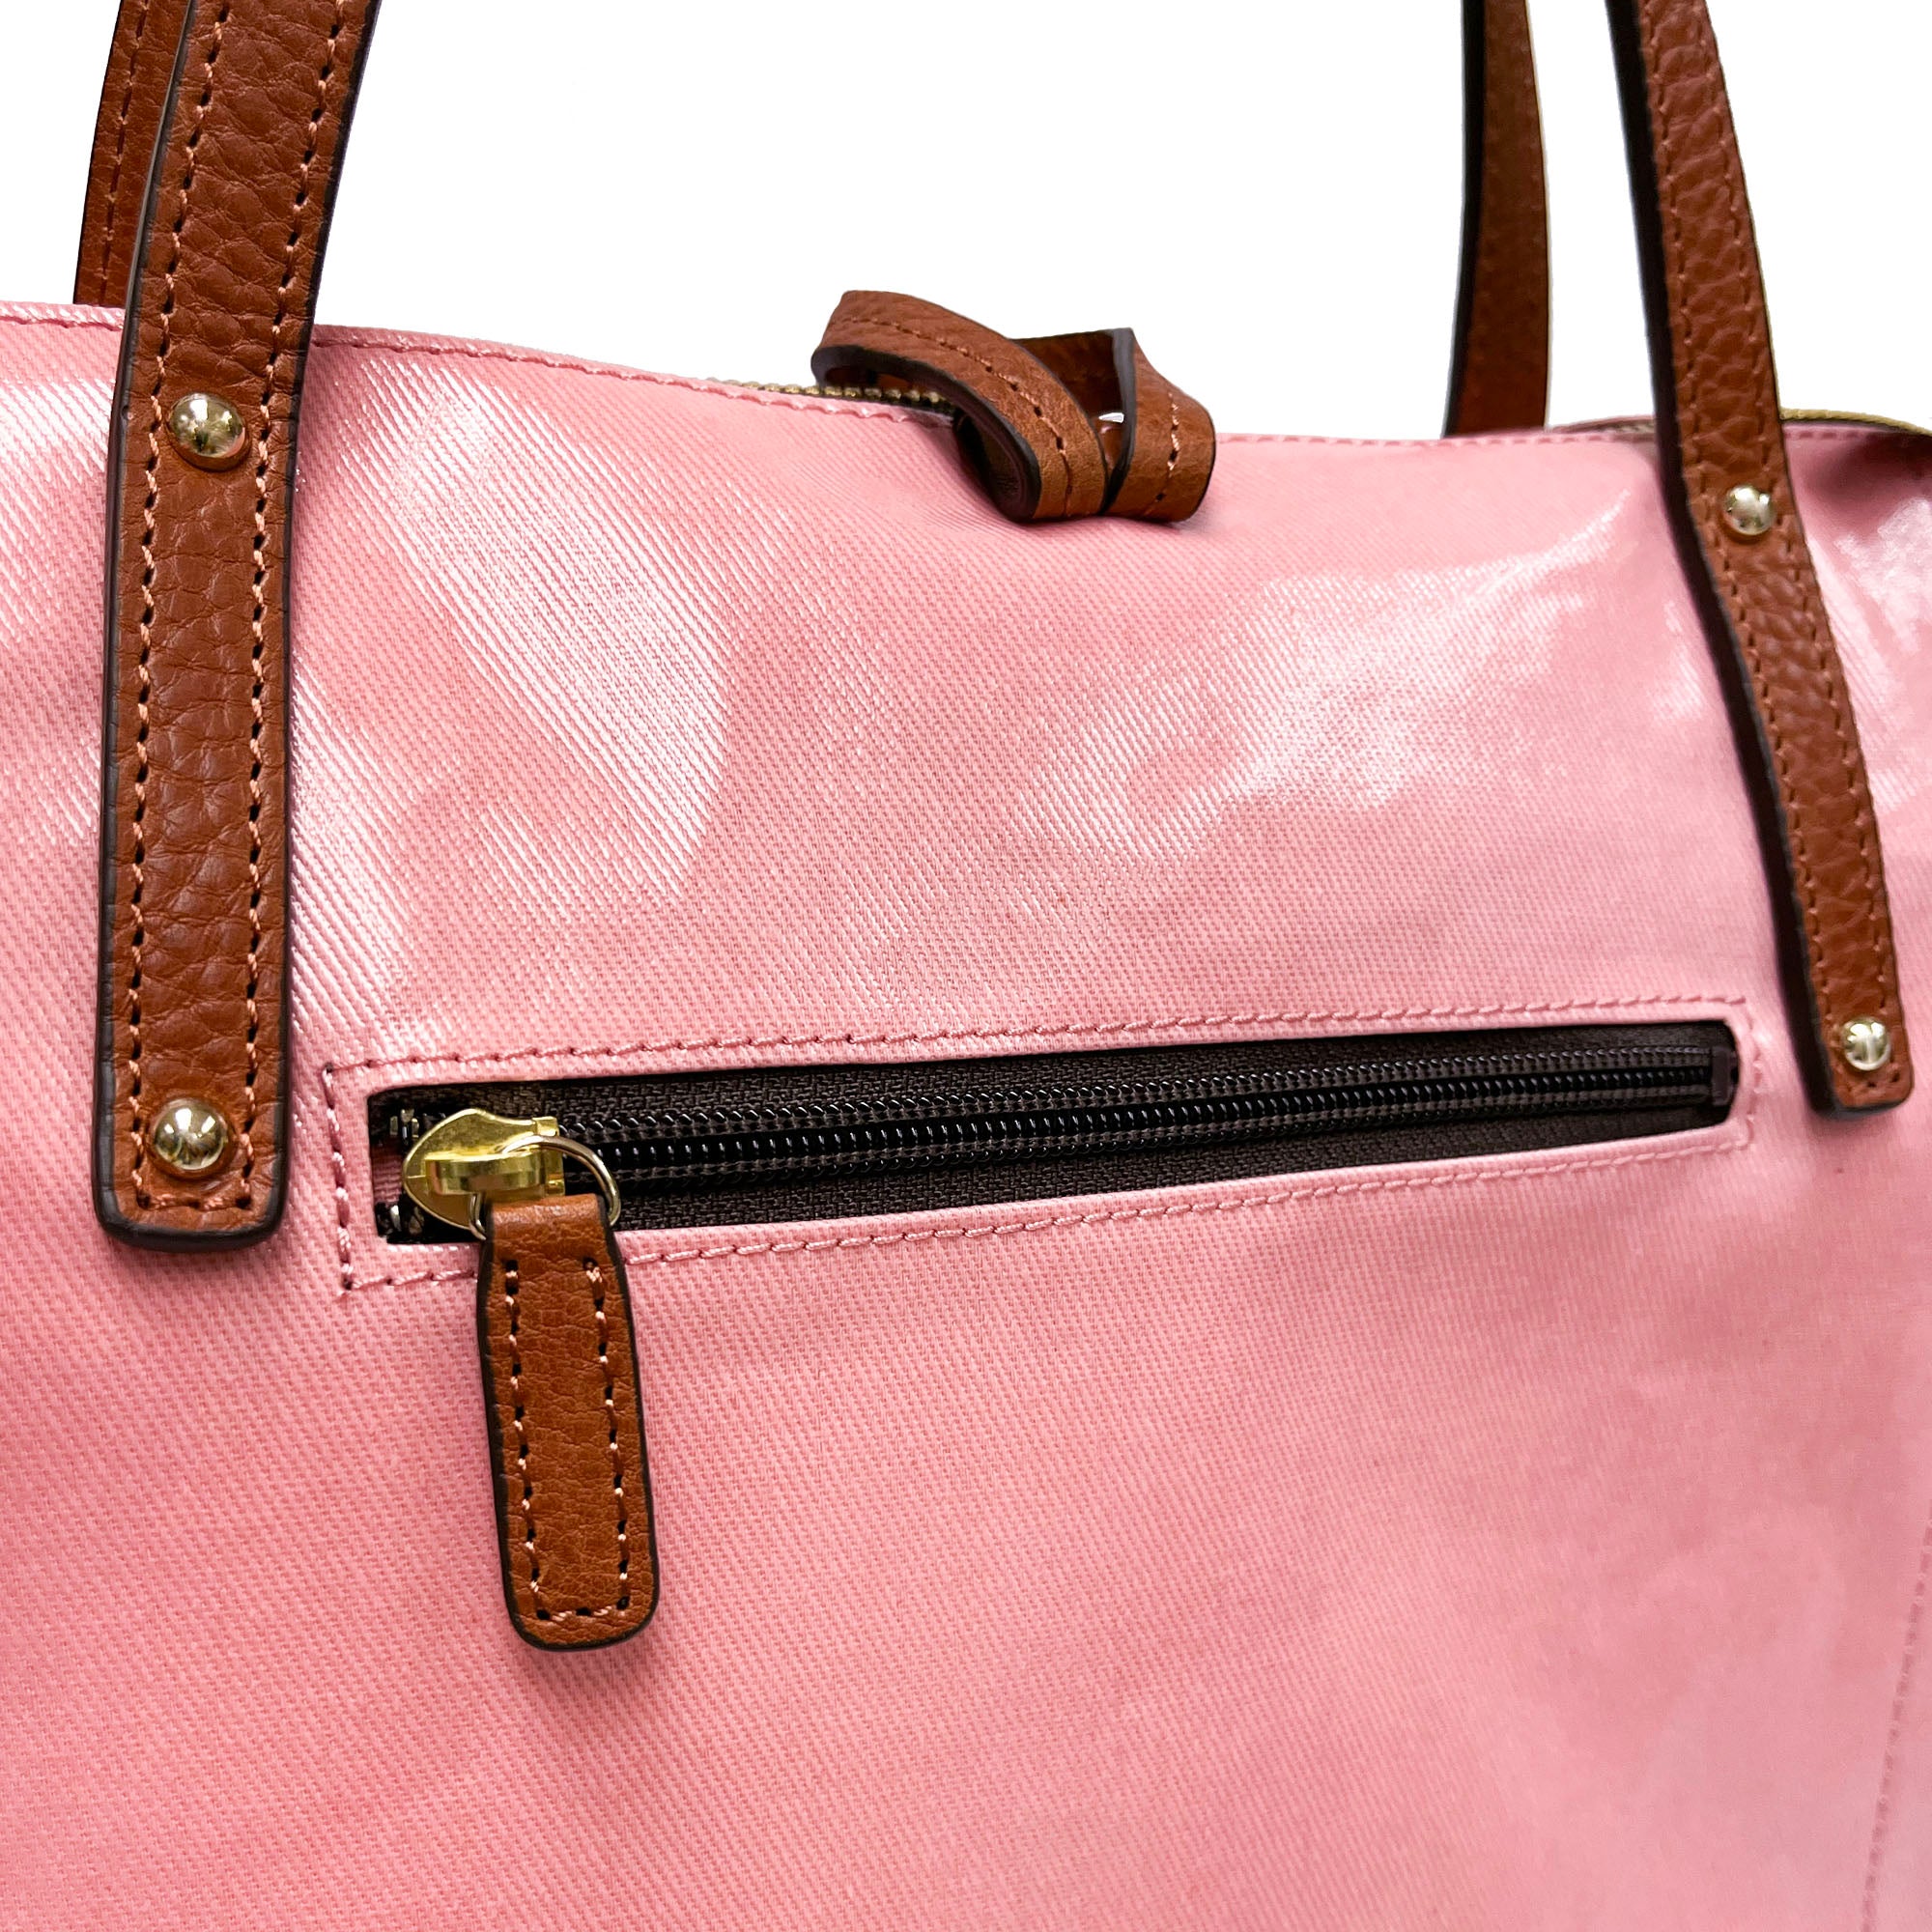 LIFE |  Waterproof Tote Bag (Coral Pink)